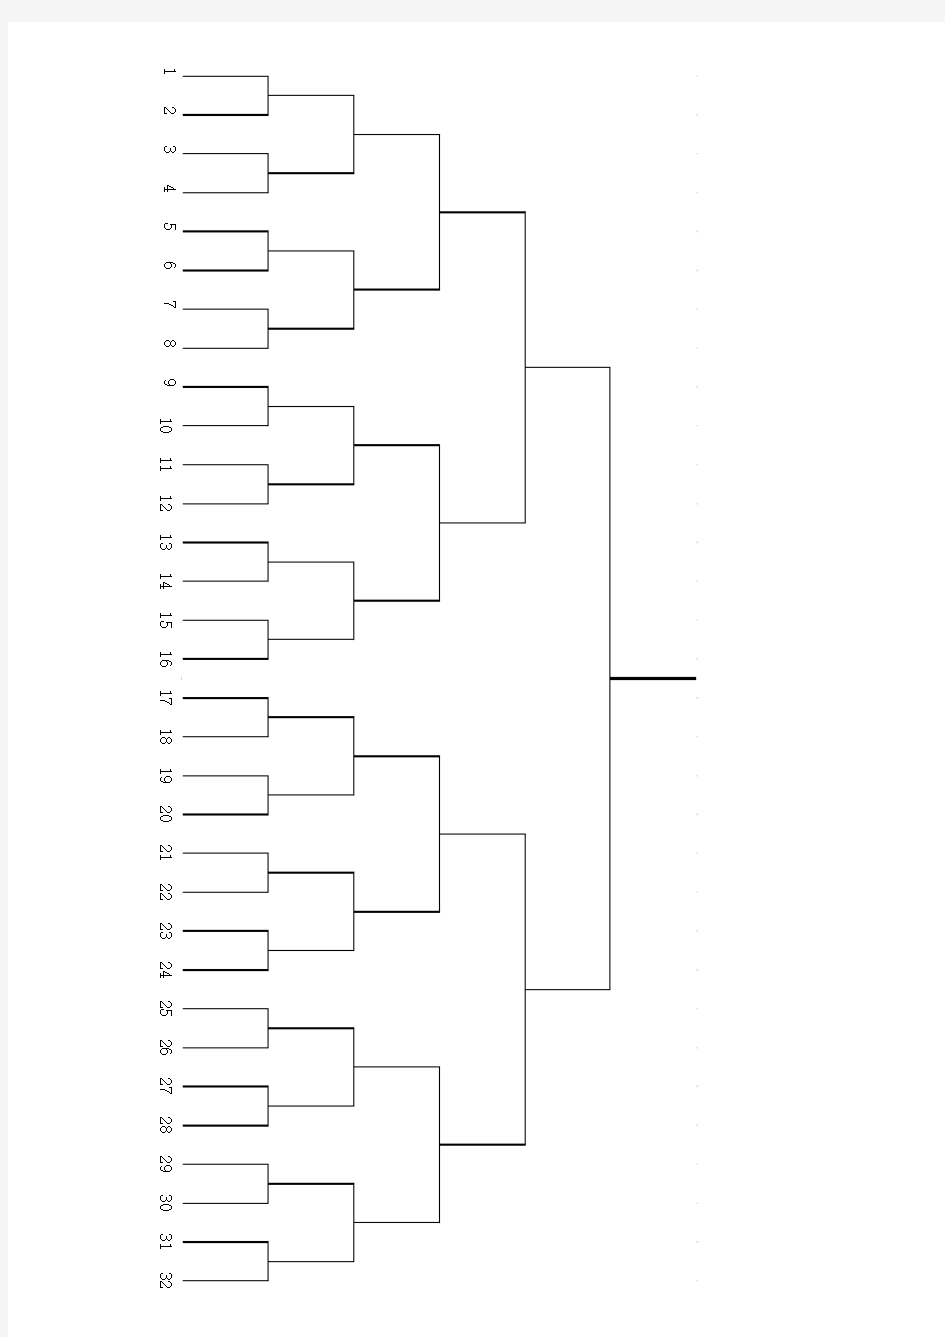 乒乓球比赛分组对阵表(8人、16人、32人)